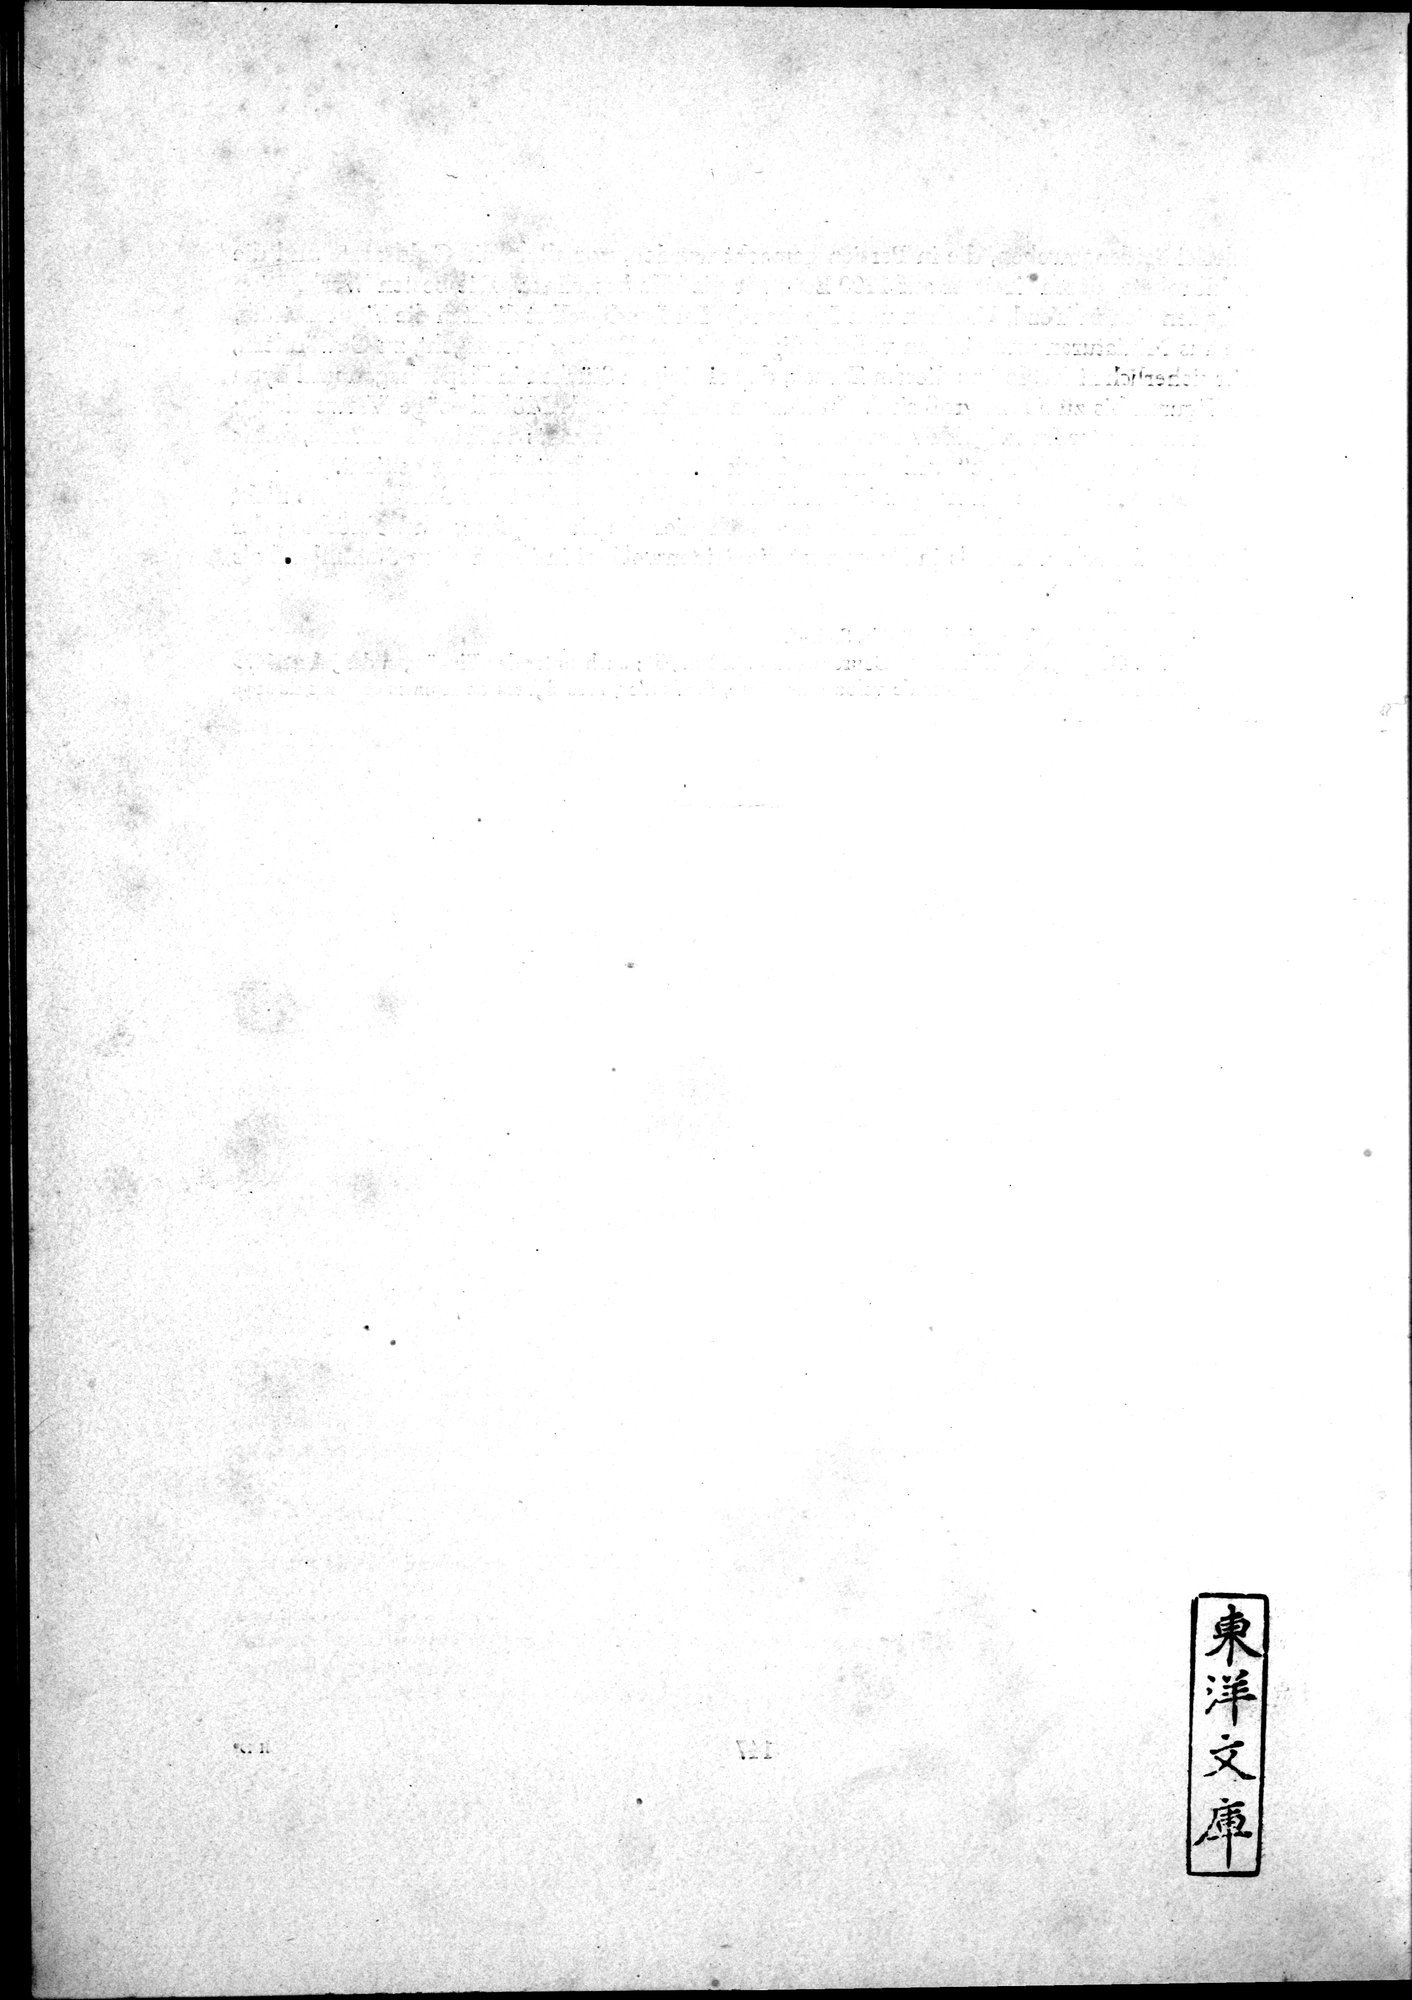 Kunstgeschichte der Seidenweberei : vol.2 / Page 338 (Grayscale High Resolution Image)